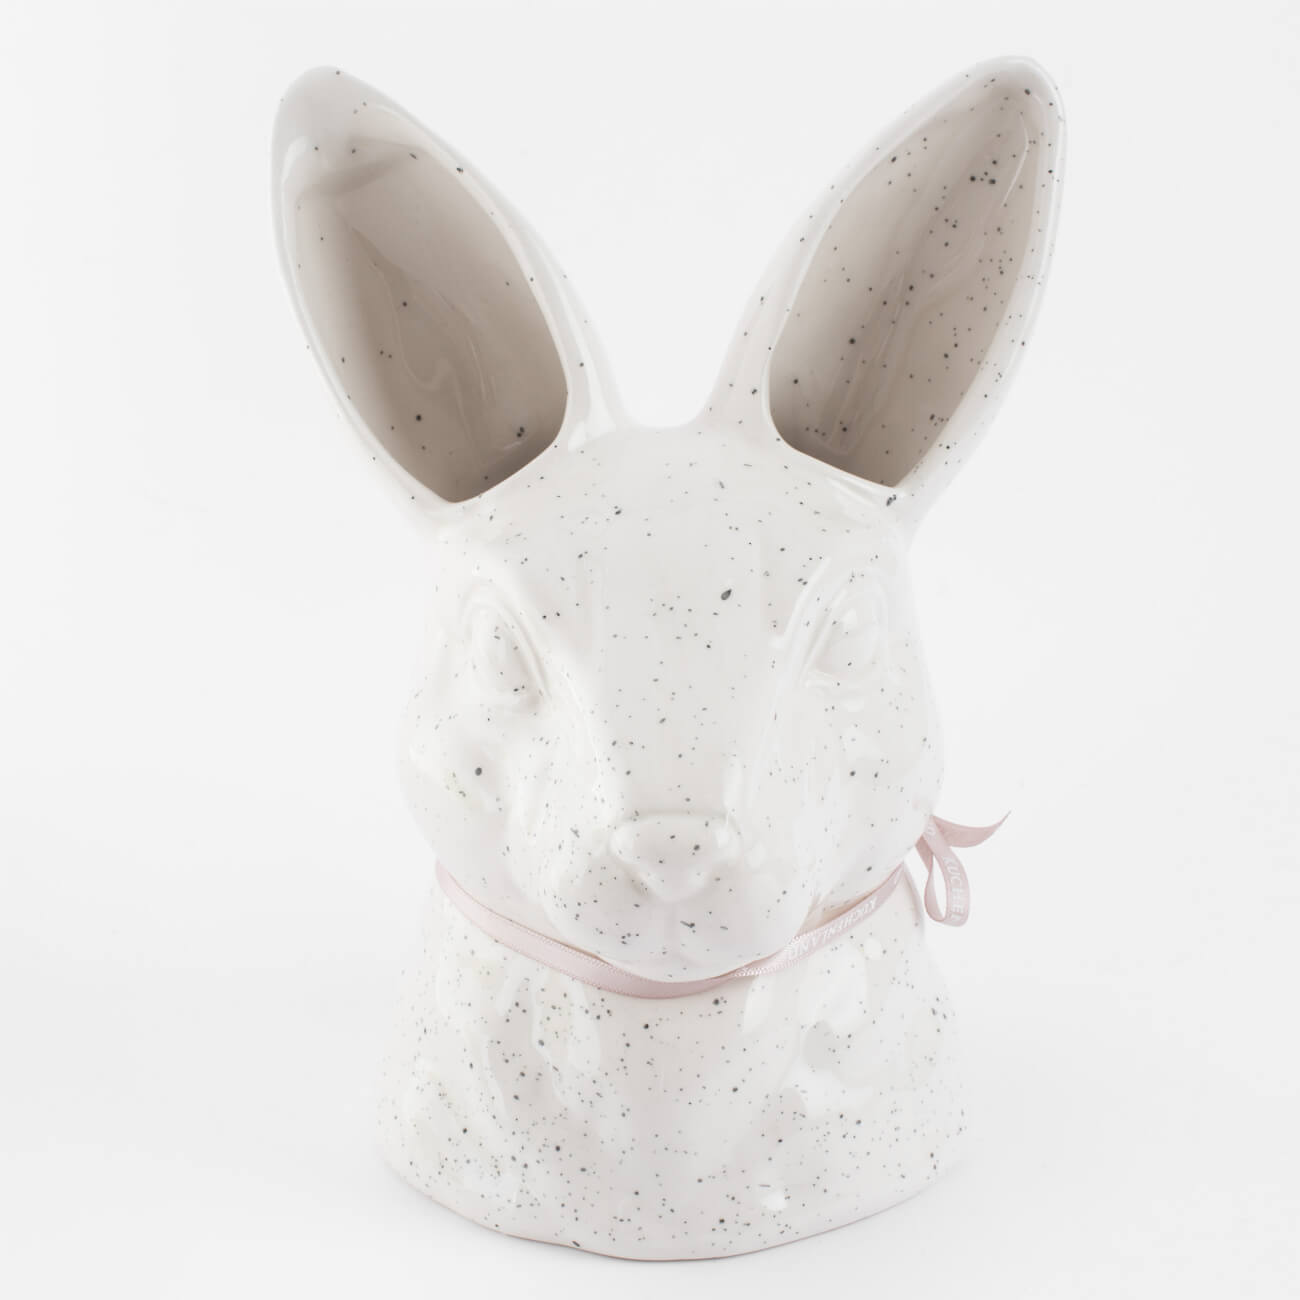 Ваза для цветов, 20 см, декоративная, керамика, молочная, в крапинку, Кролик, Natural Easter kuchenland ваза для ов 26 см декоративная керамика белая лицо face